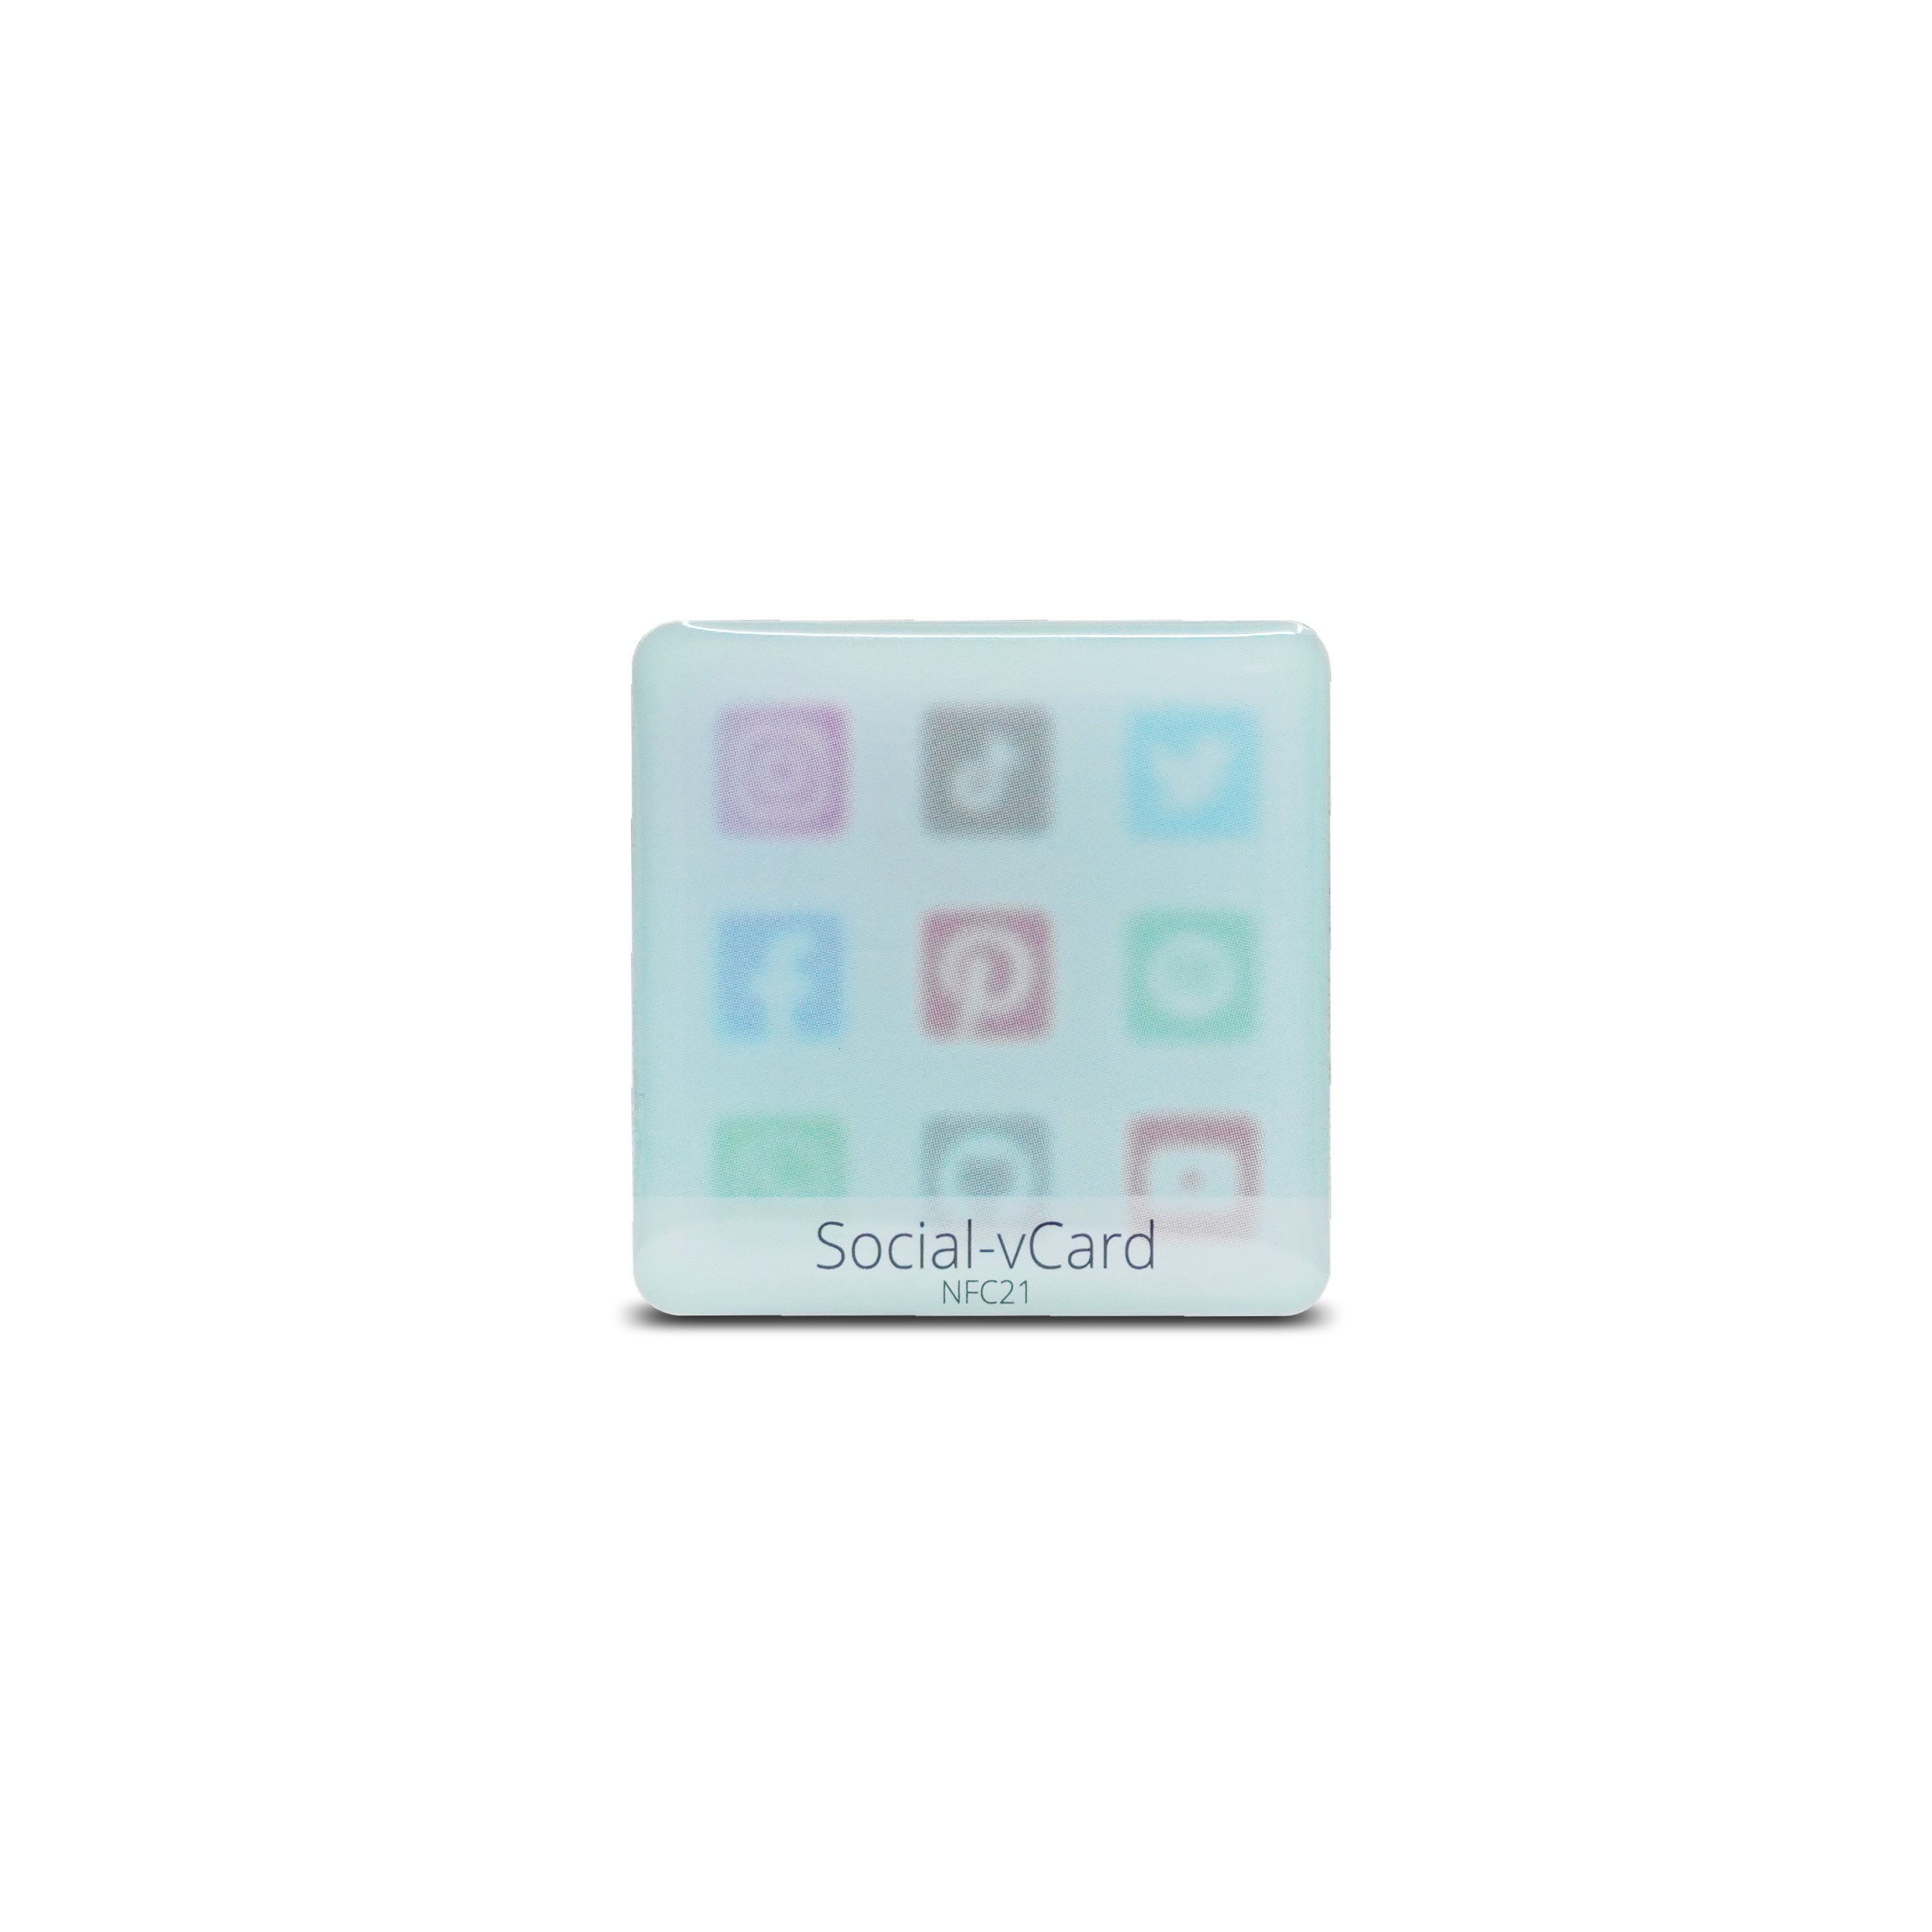 Social-vCard Light - Digitaler Social Media Sticker - PET  - 35 x 35 mm - hellblau